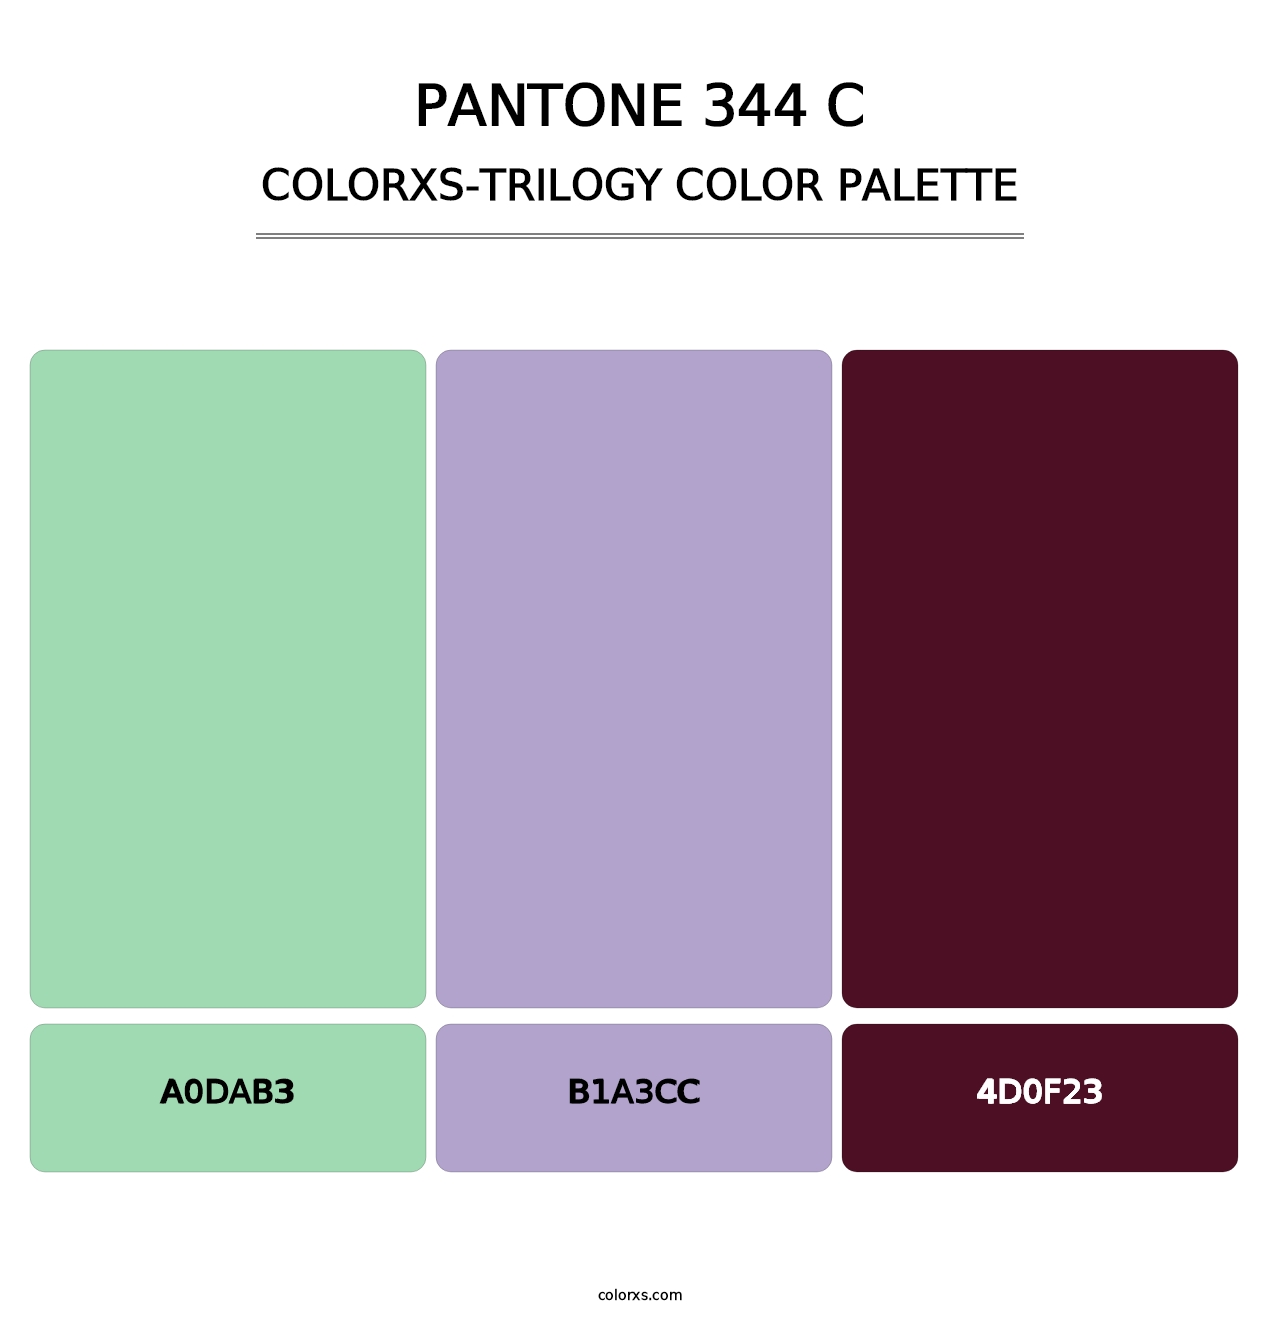 PANTONE 344 C - Colorxs Trilogy Palette